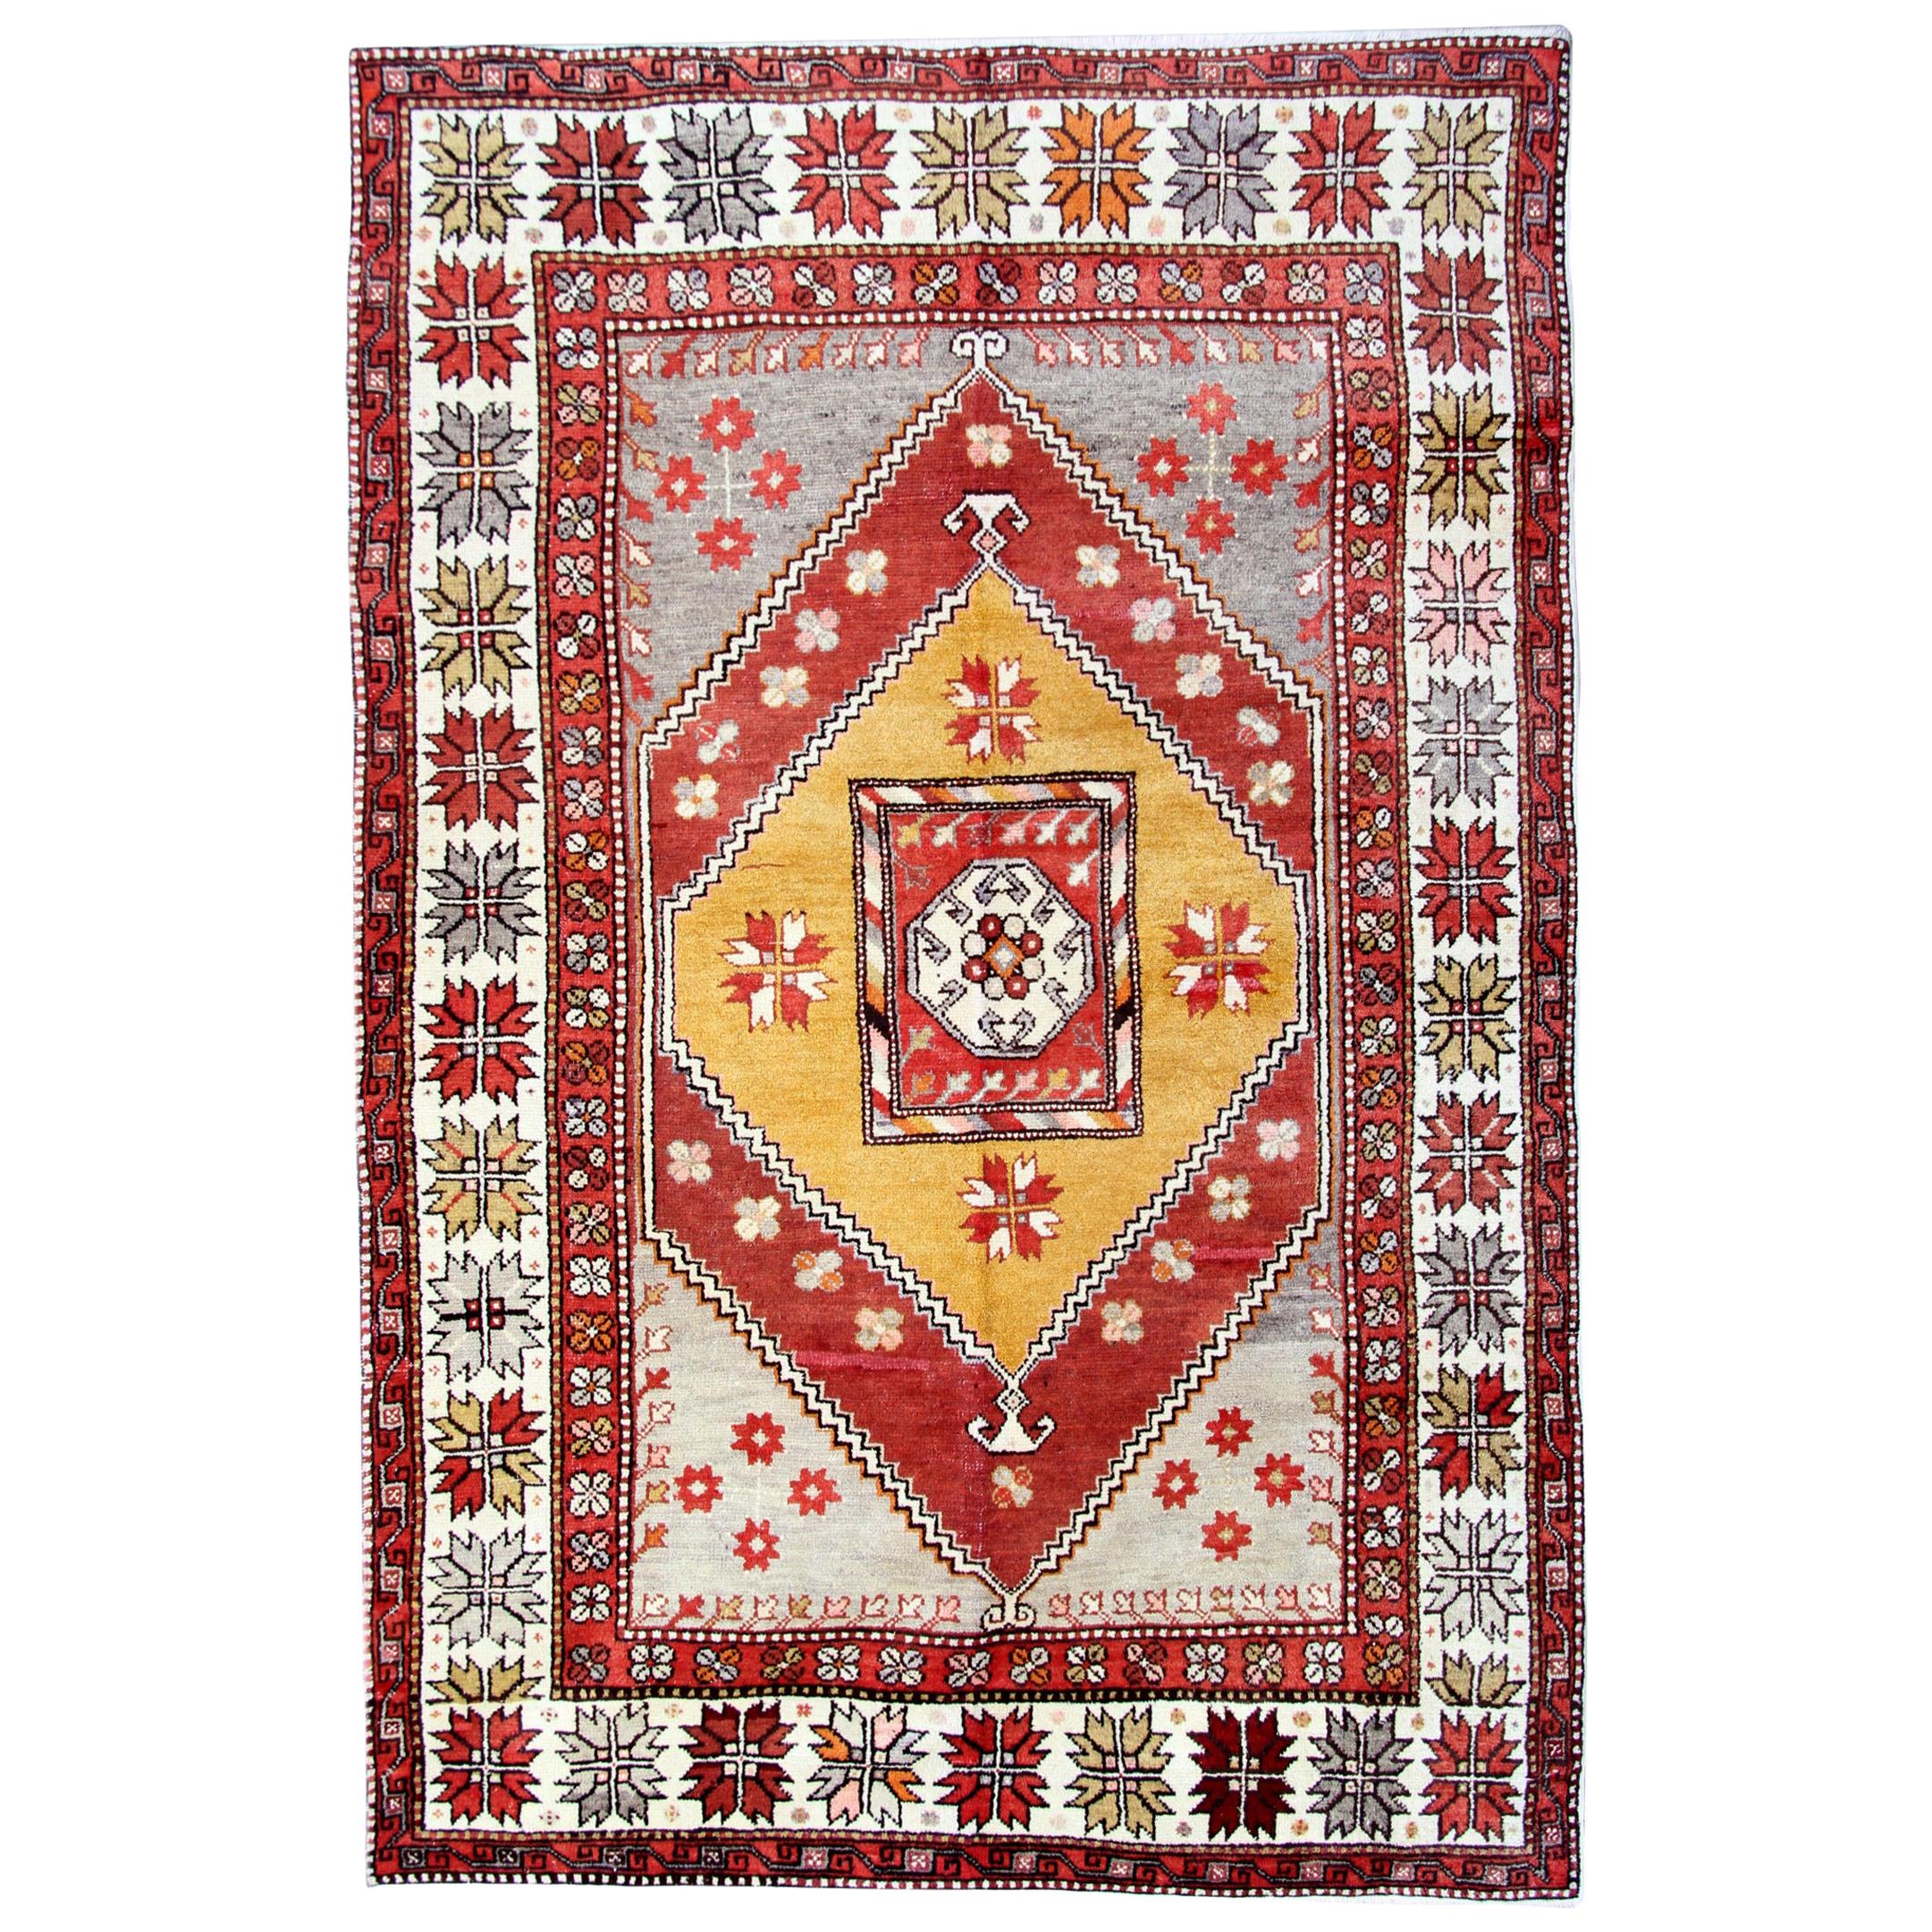 Milas Antike Teppiche, Türkischer Teppich Gelb Handgefertigter Teppich Orientalische Teppiche